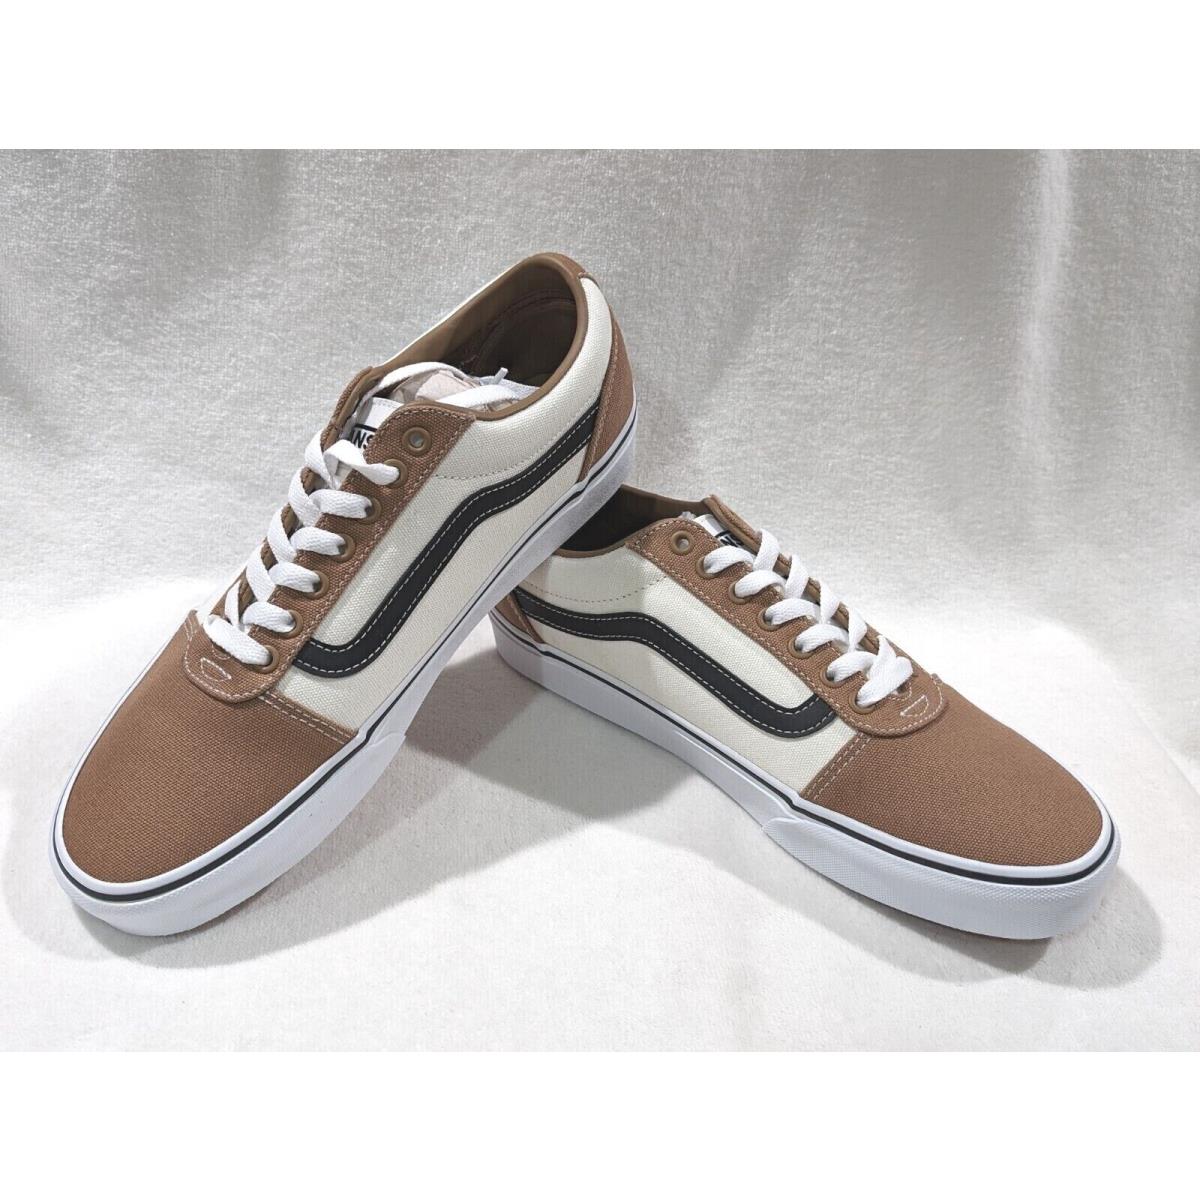 Vans Men`s Ward Retro Light Brown Canvas Skate Shoes - Size 9